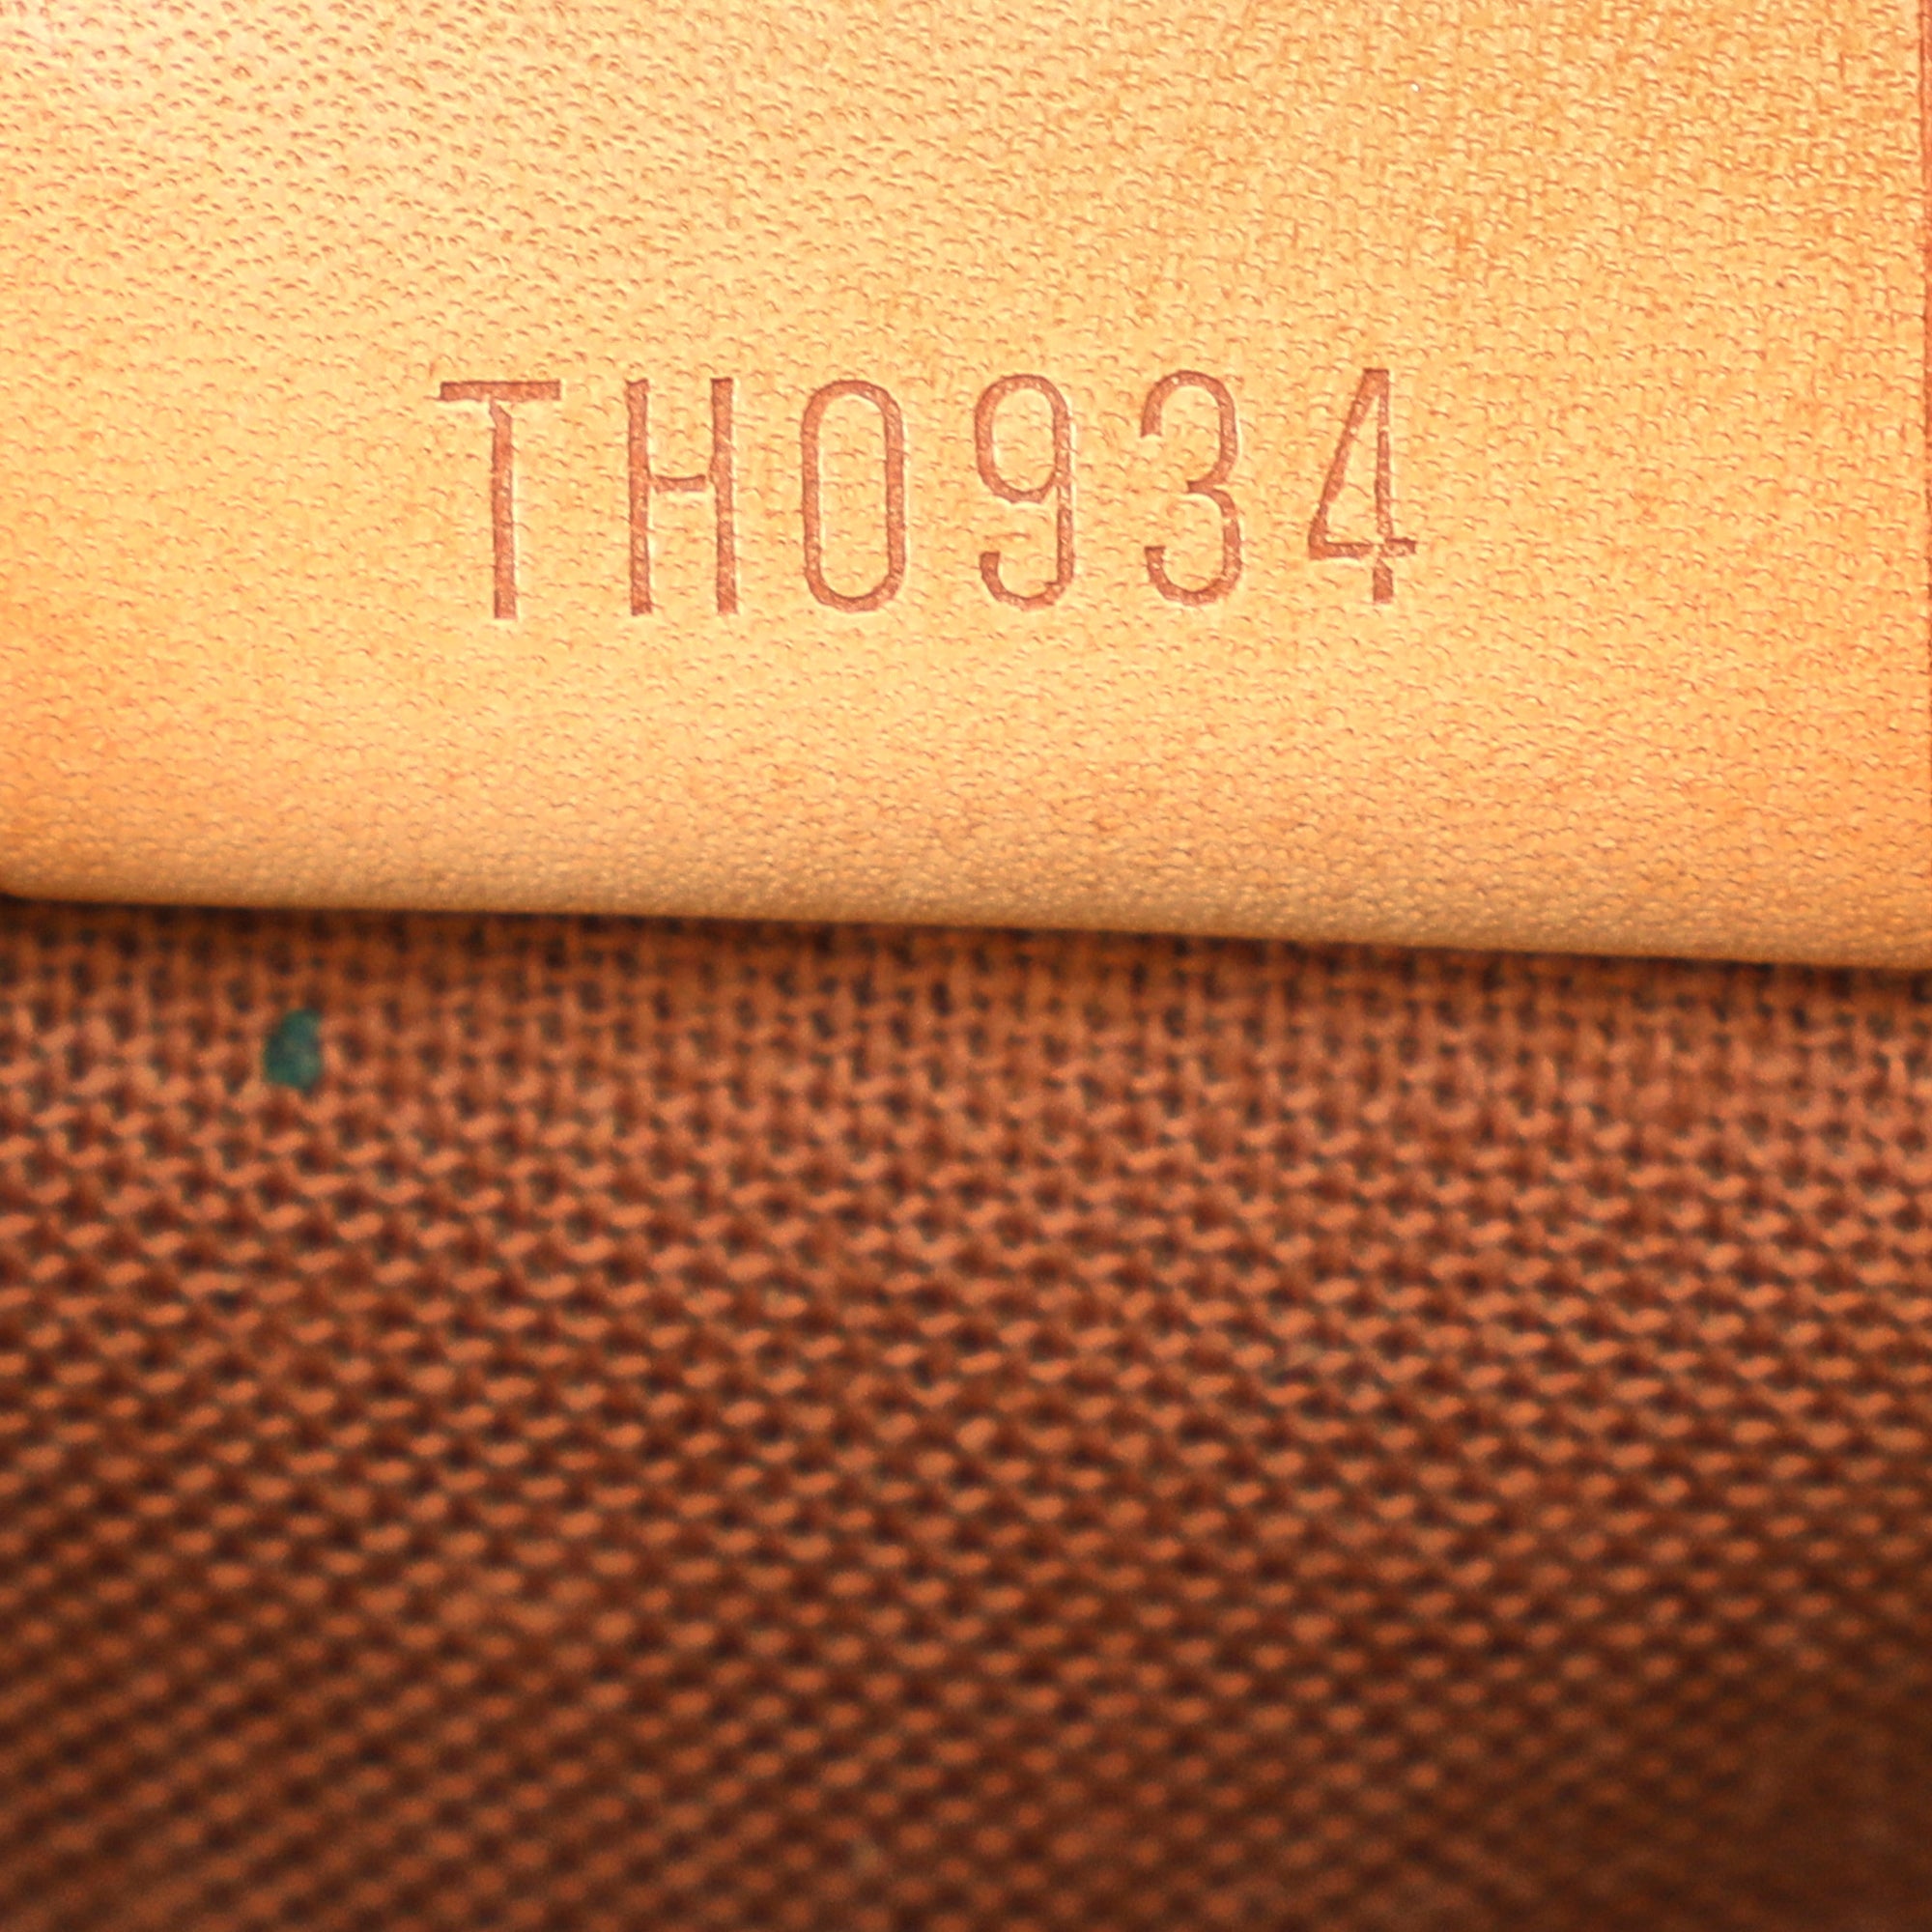 Louis Vuitton Speedy 40 Mini Boston Bag